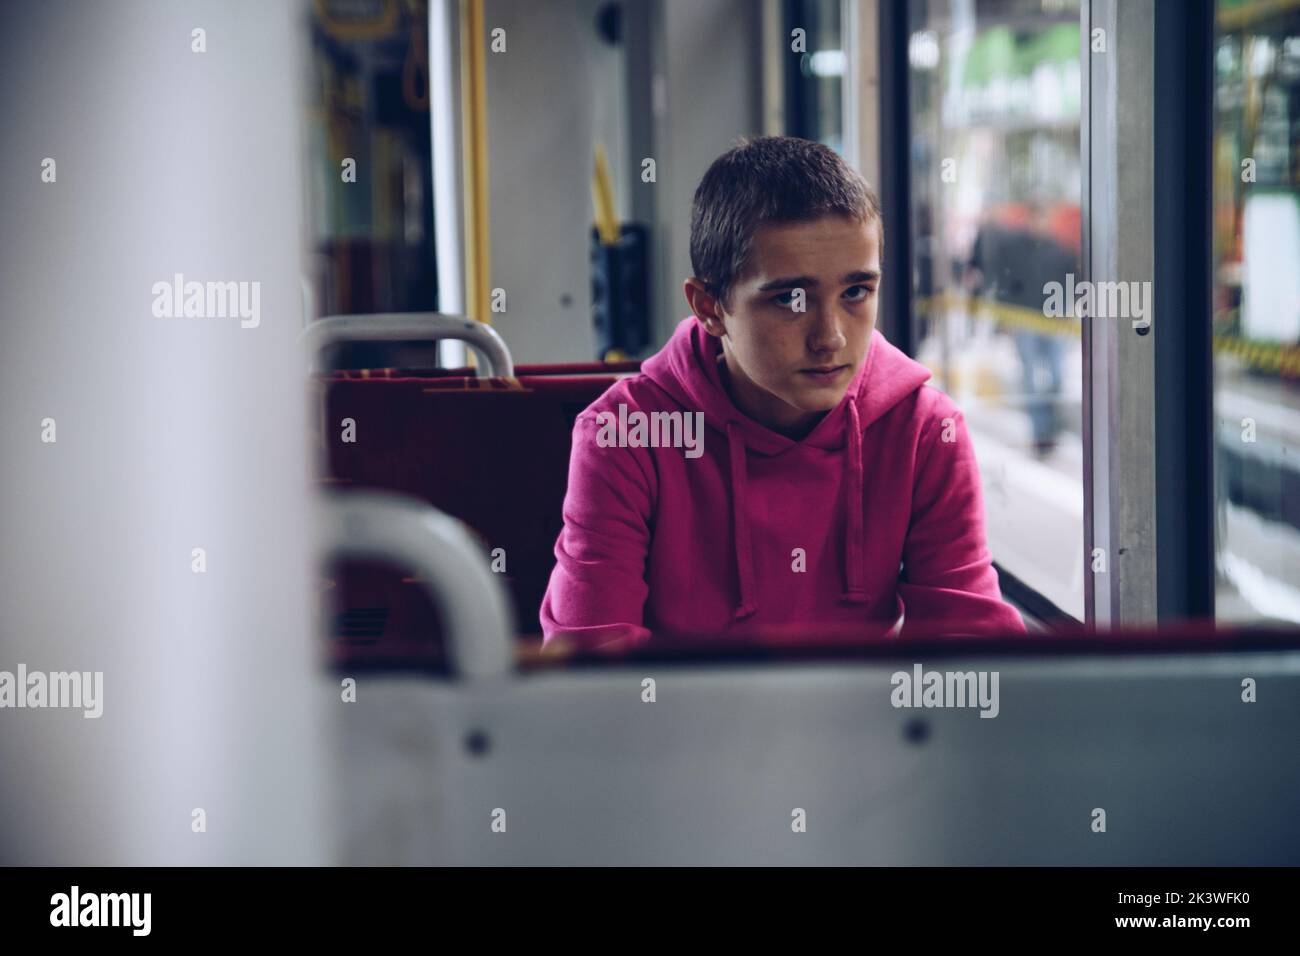 Teenager-Junge in einem rosa Kapuzenpullover, nachdenklich mit dem Bus unterwegs Stockfoto